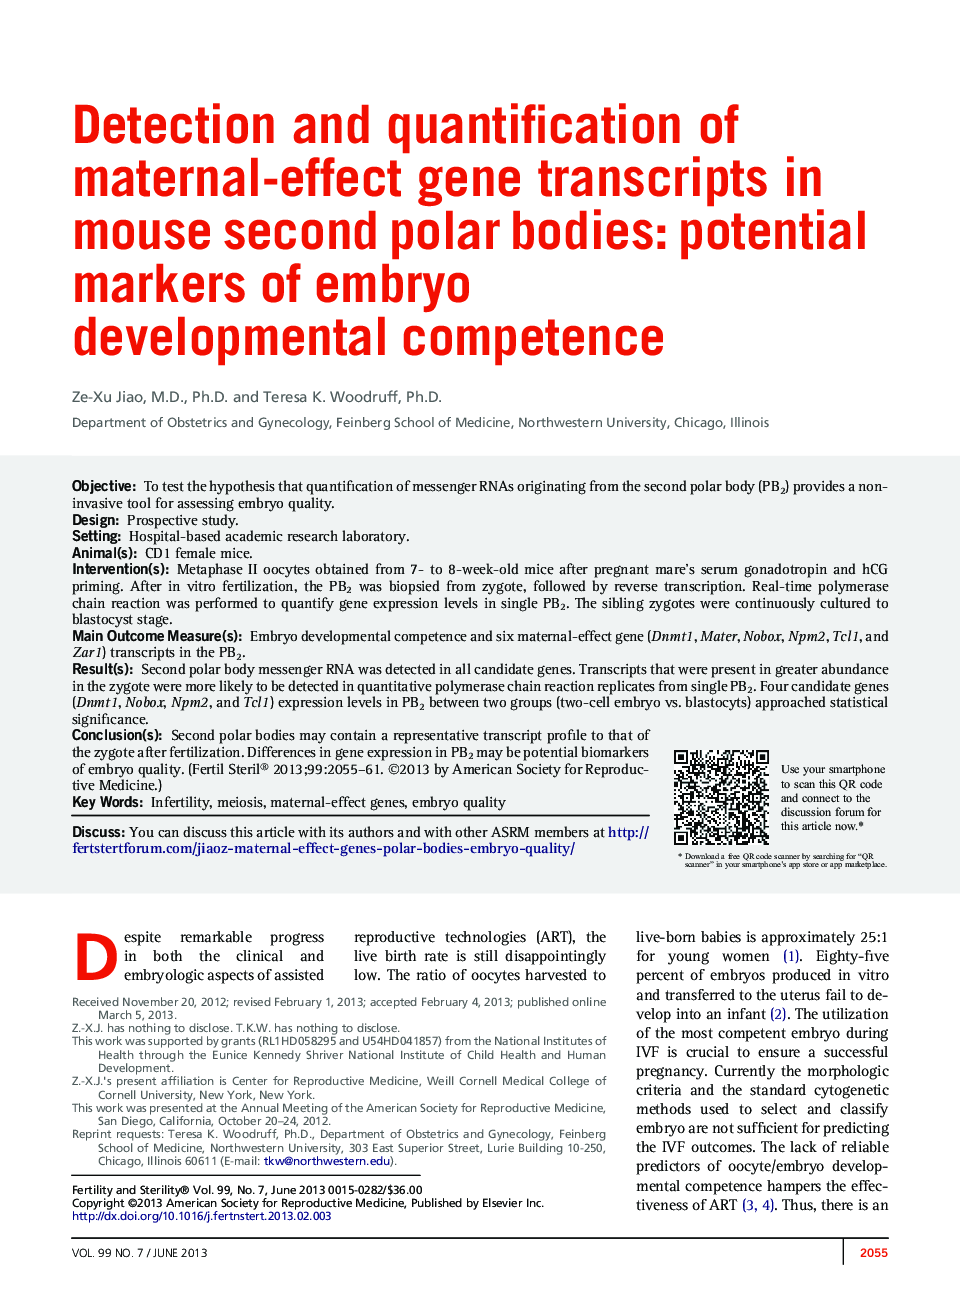 تشخیص و اندازه گیری رونوشت های ژنی اثر مادر در موش های قطبی دوم موش: نشانگرهای بالقوه صلاحیت رشد جنین 